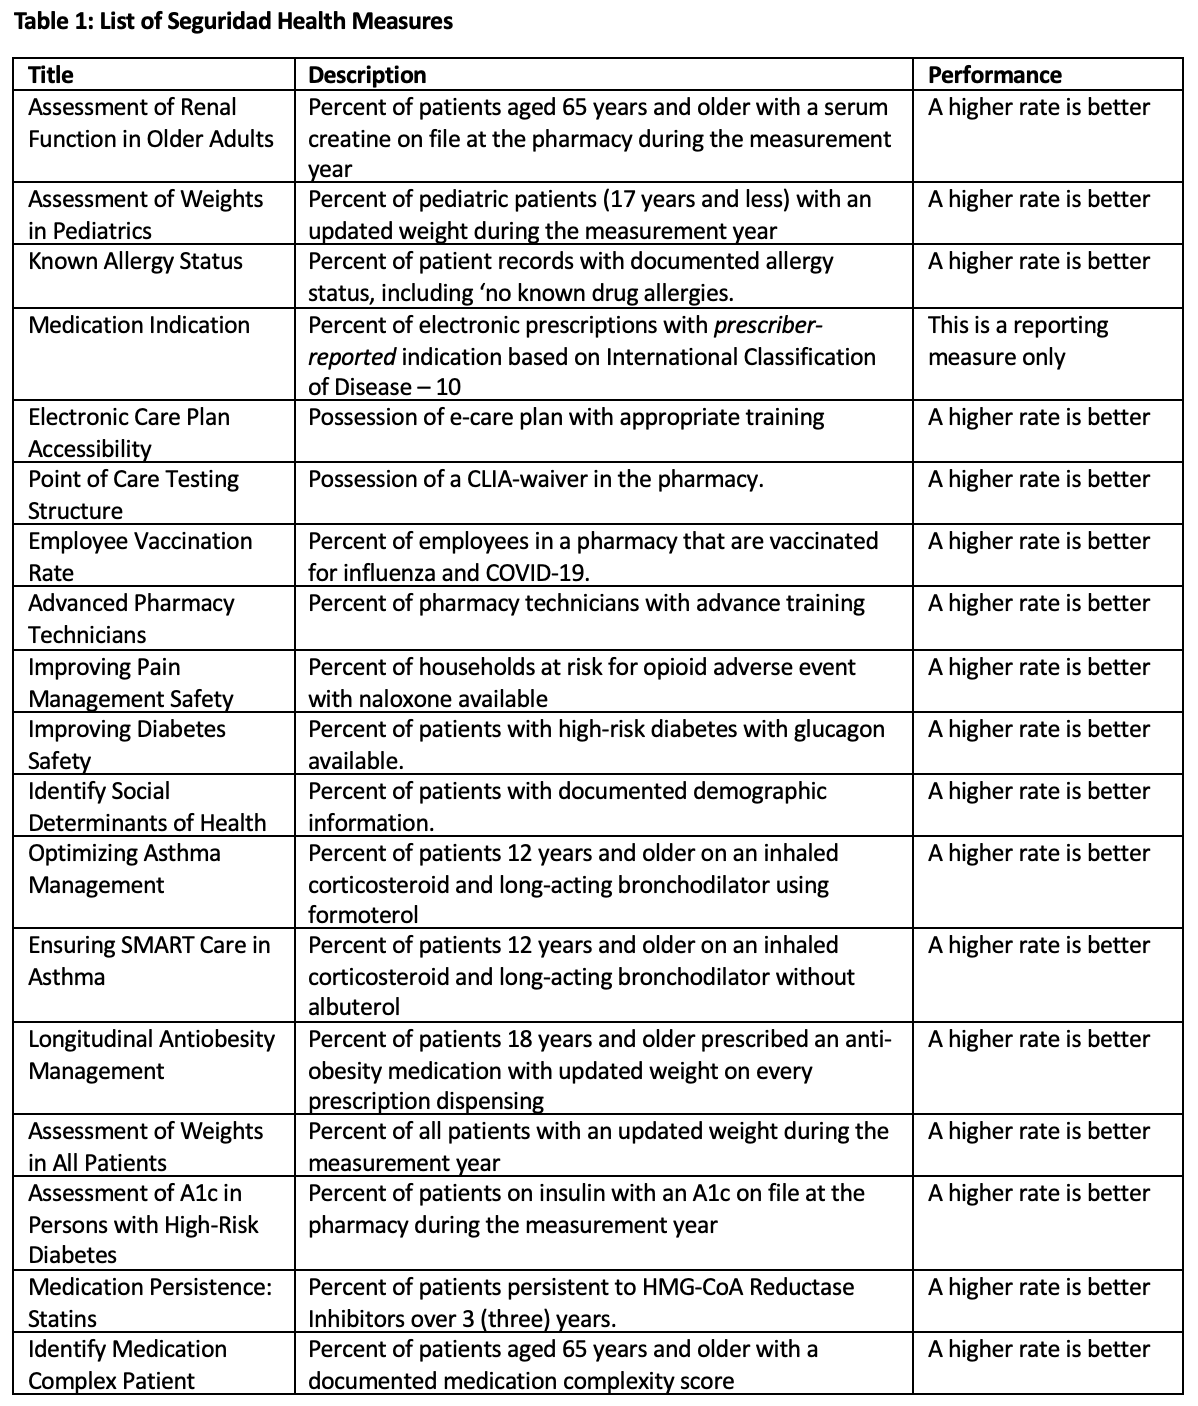 Table 1. List of Seguridad Health Measures